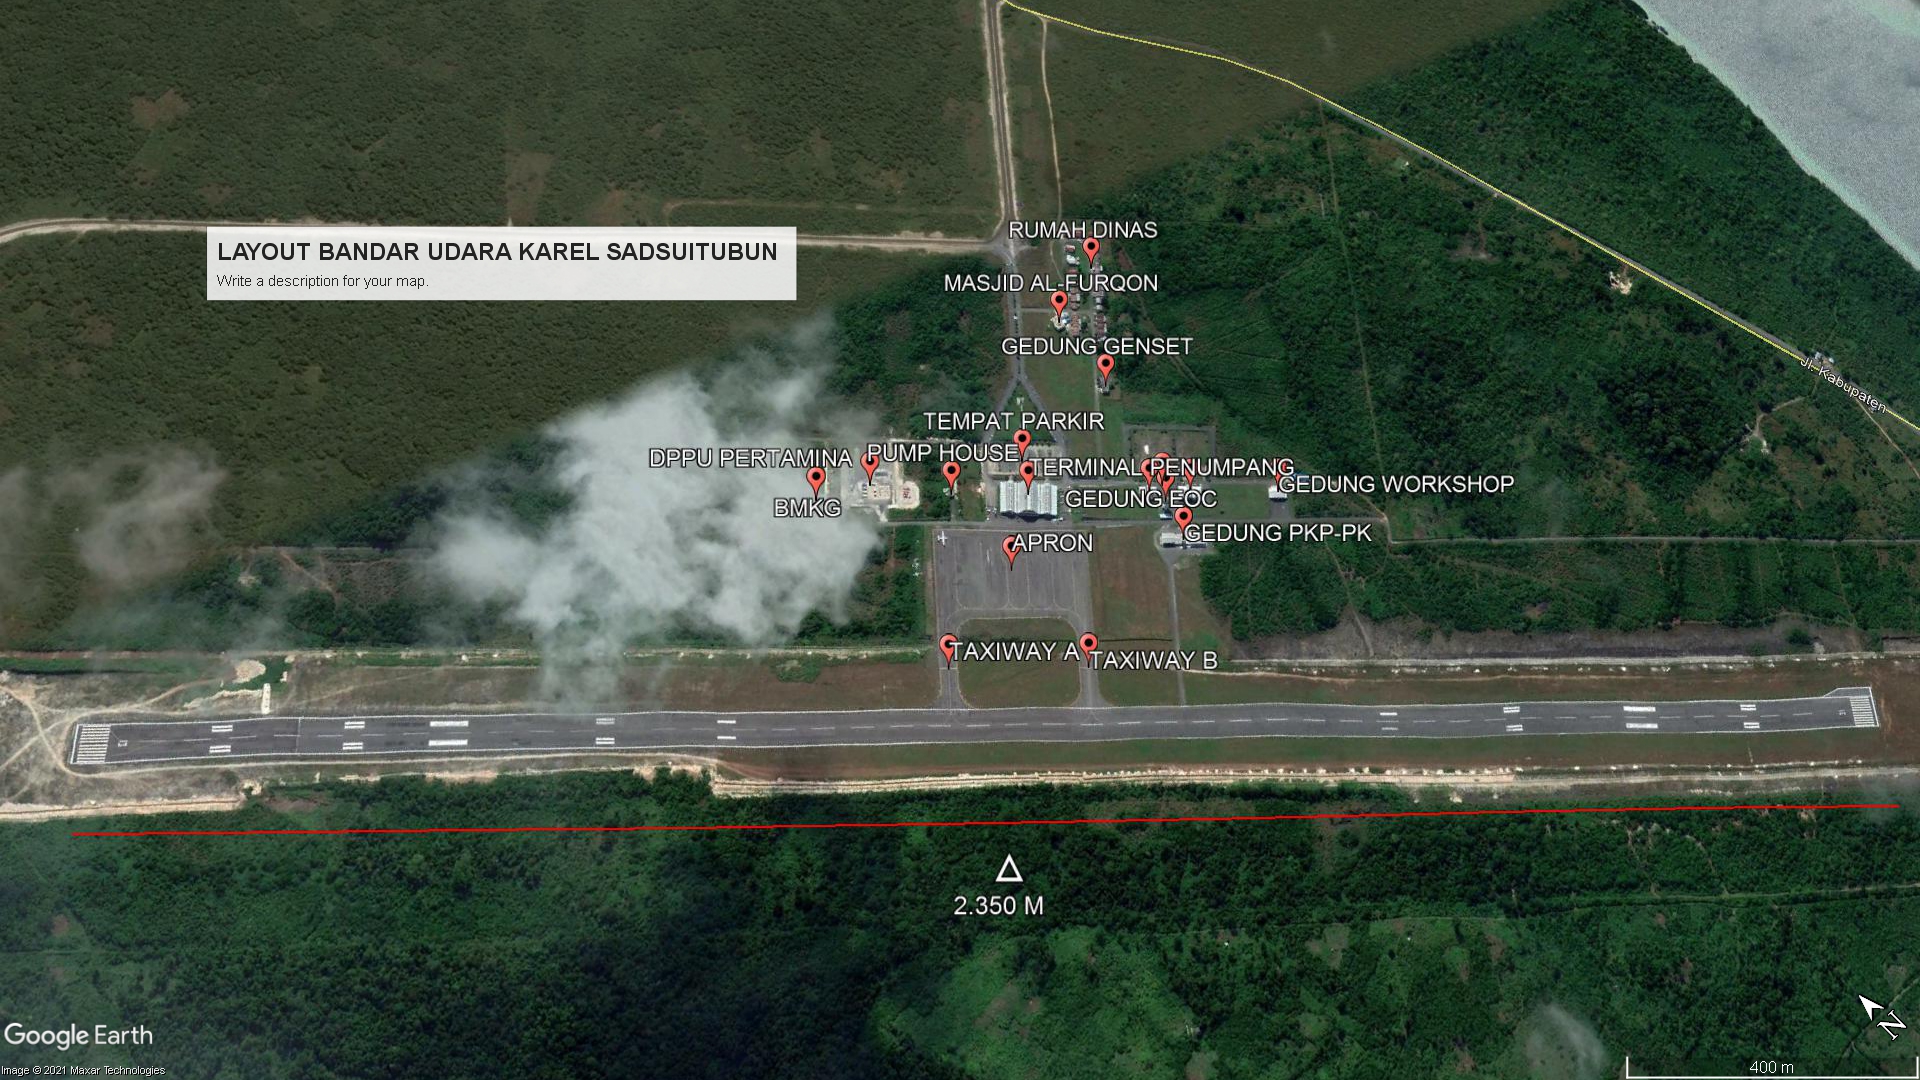 Gambar Peta Bandara LAYOUT BANDAR UDARA KAREL SADSUITUBUN